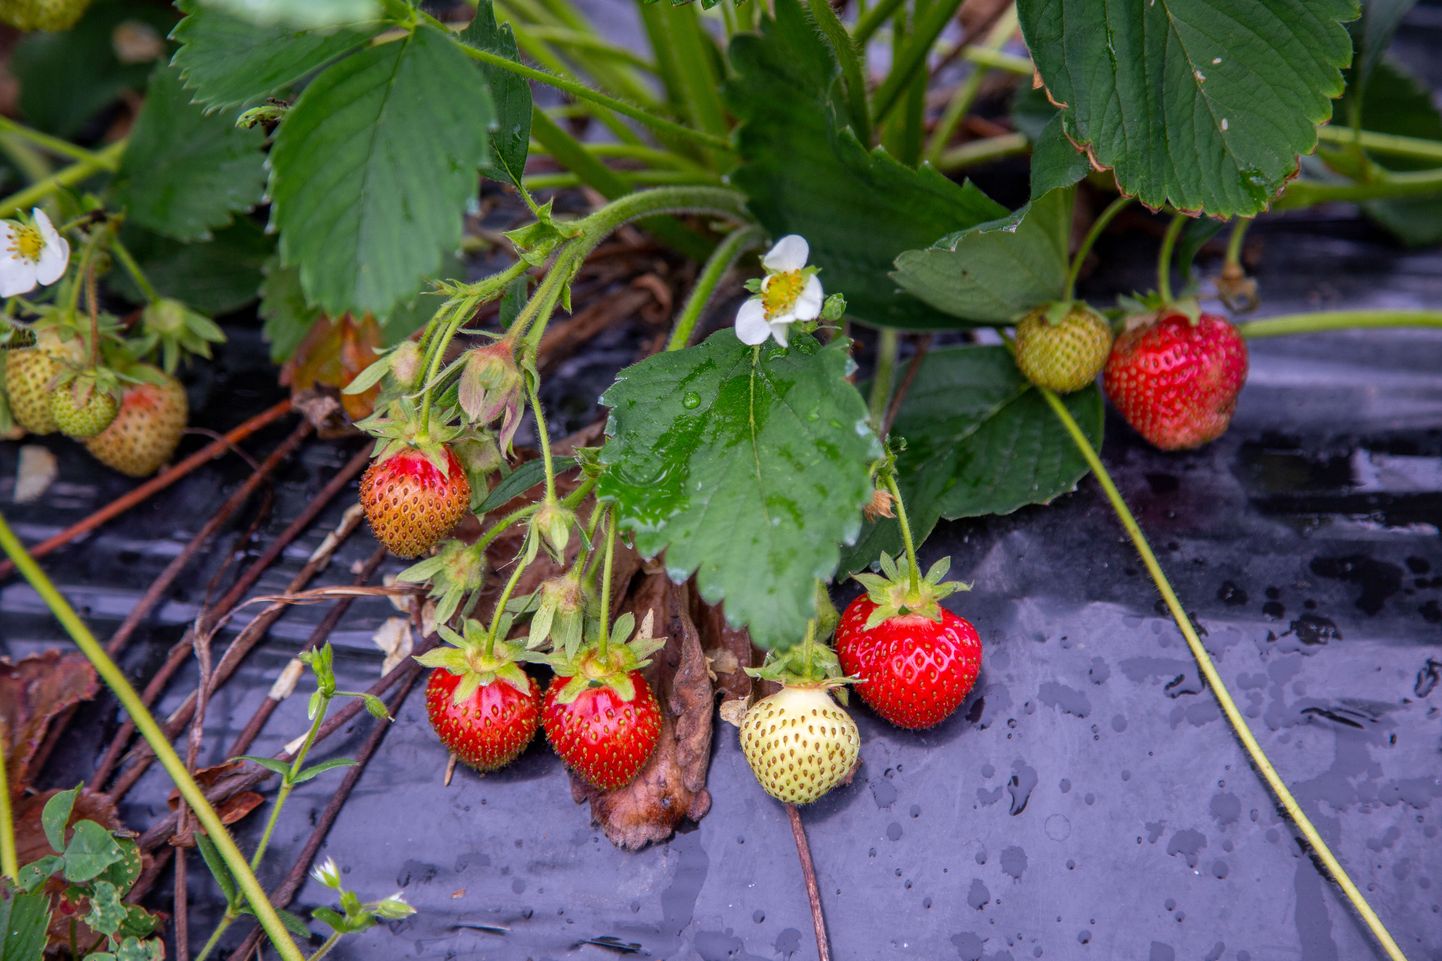 Esimesed kodumaised maasikad valmivad juba lähinädalatel. Põllumajandussaaduste korjamist ei saa seniks edasi lükata, mil töötute hulk kasvab nii suureks, et jätkub piisavalt põllumajanduses töötamisest huvitatud kohalikke inimesi.